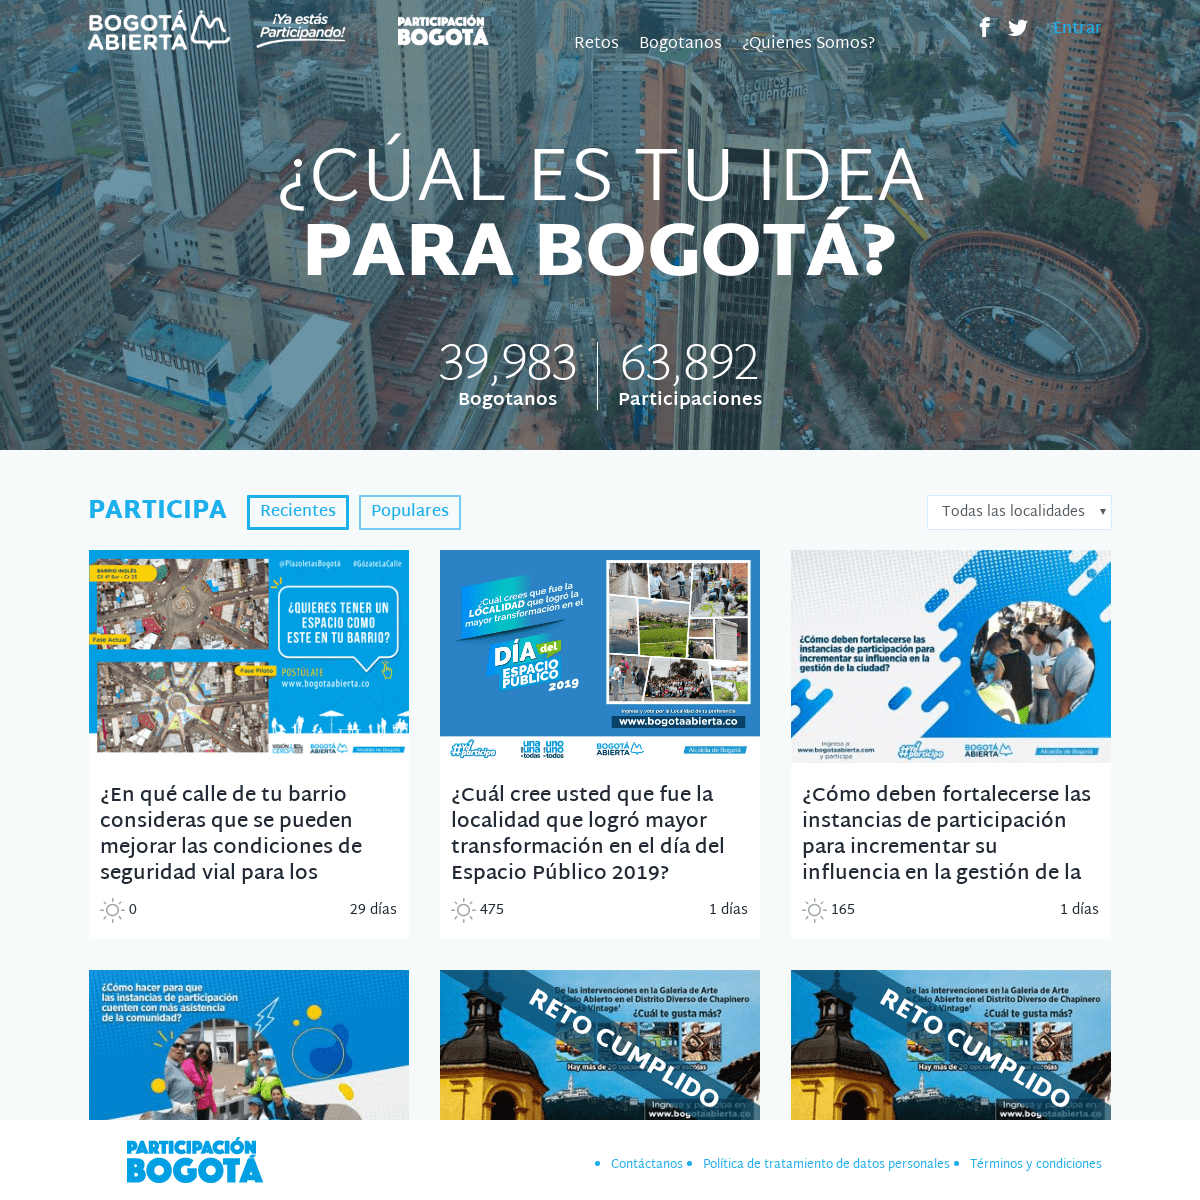 Bogotá Abierta - Plataforma de cocreación ciudadana en Colombia